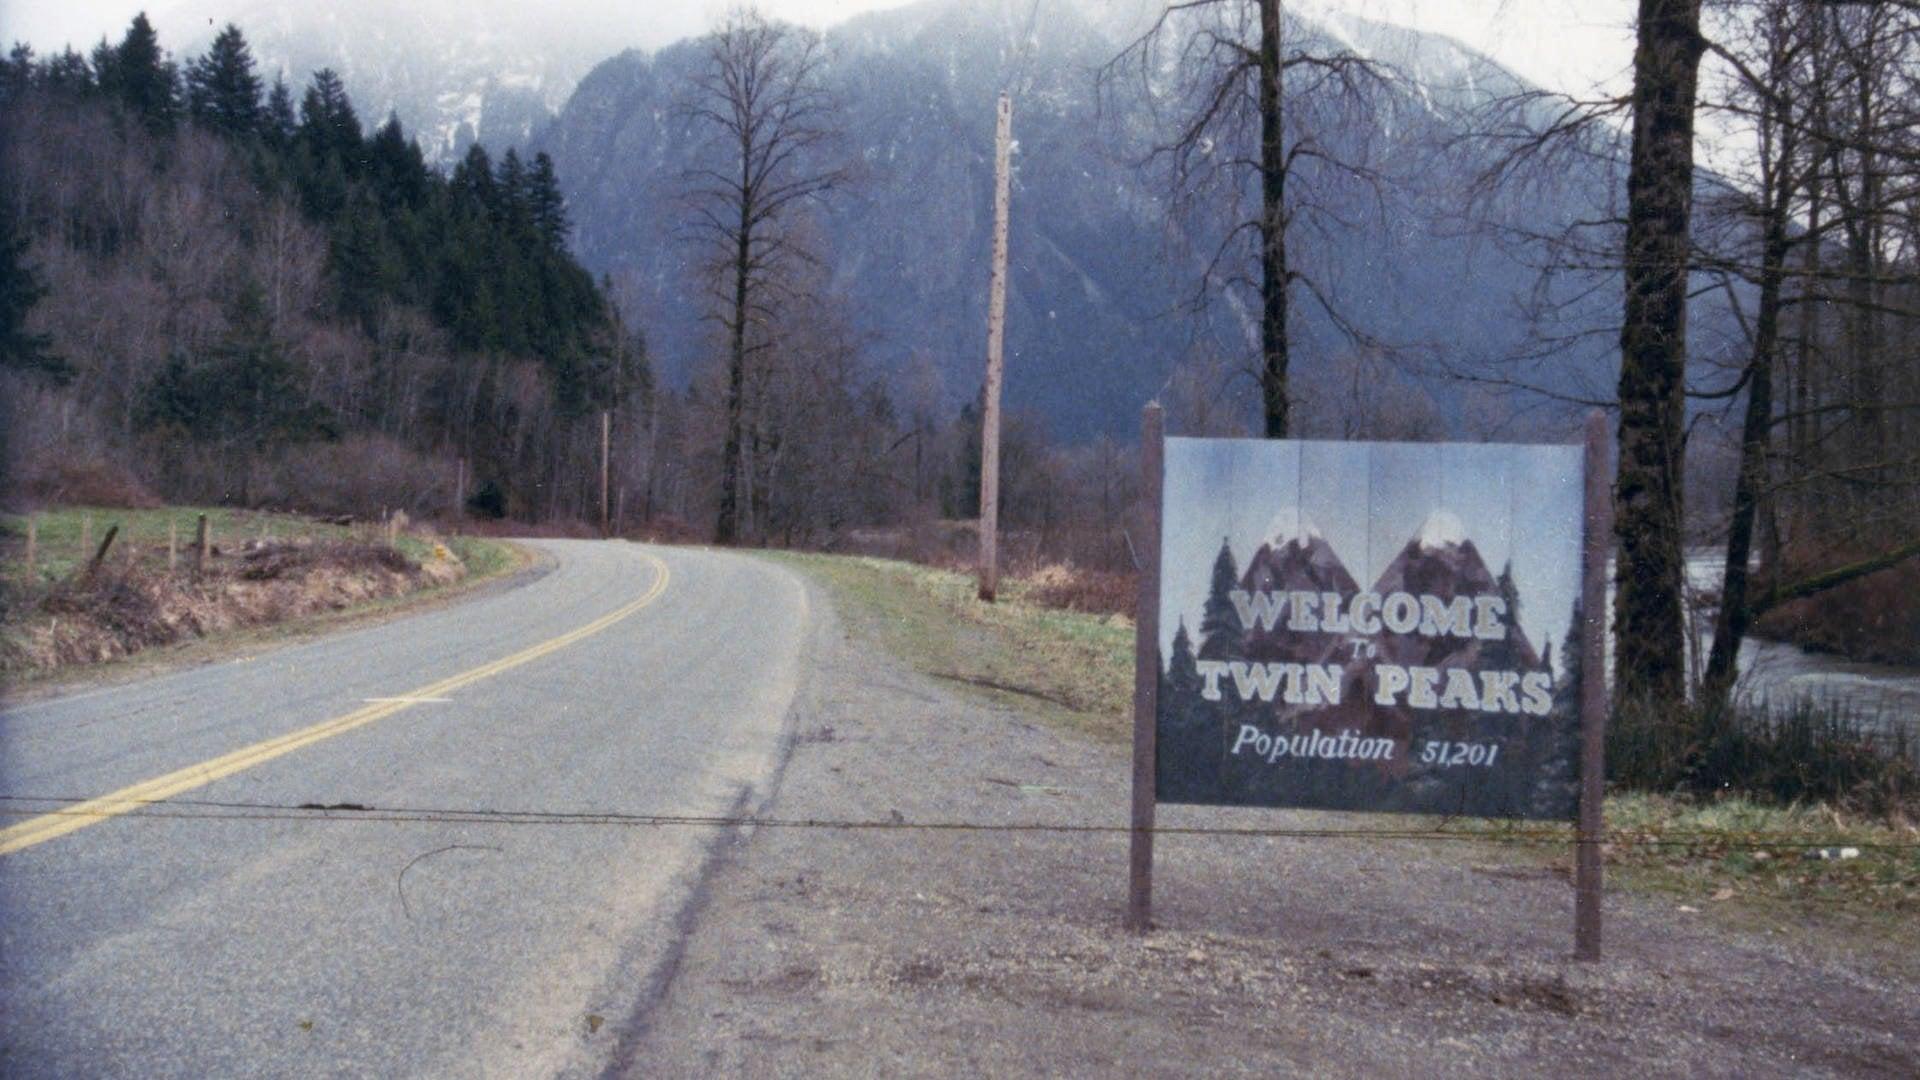 Twin Peaks backdrop